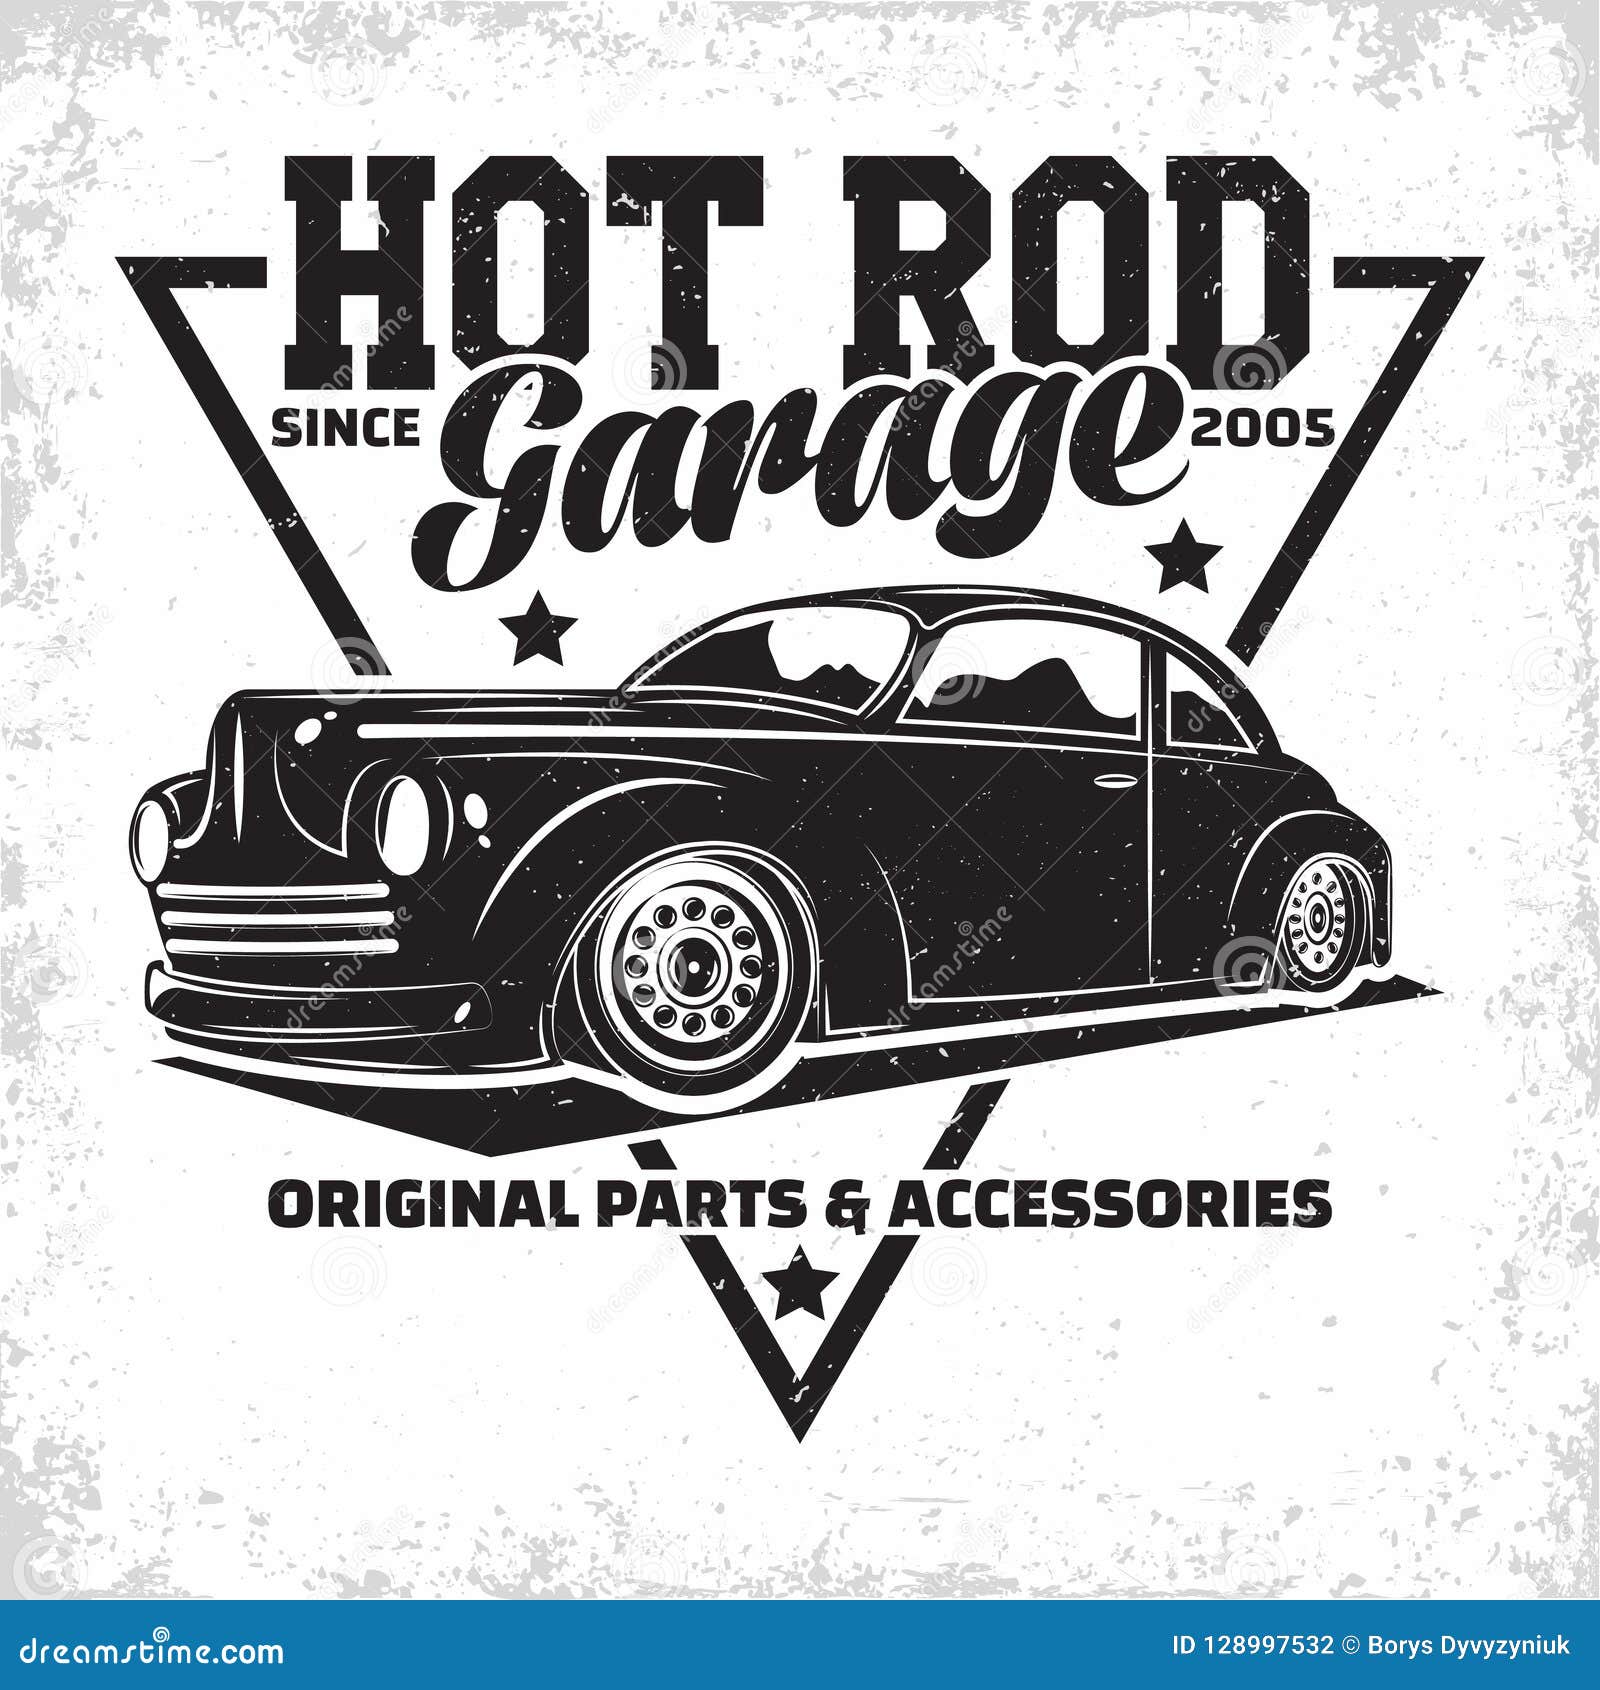 Hot Rod Beauty Garage Piston Kolben Pin Up Art Retro Sign Blechschild Schild NEU